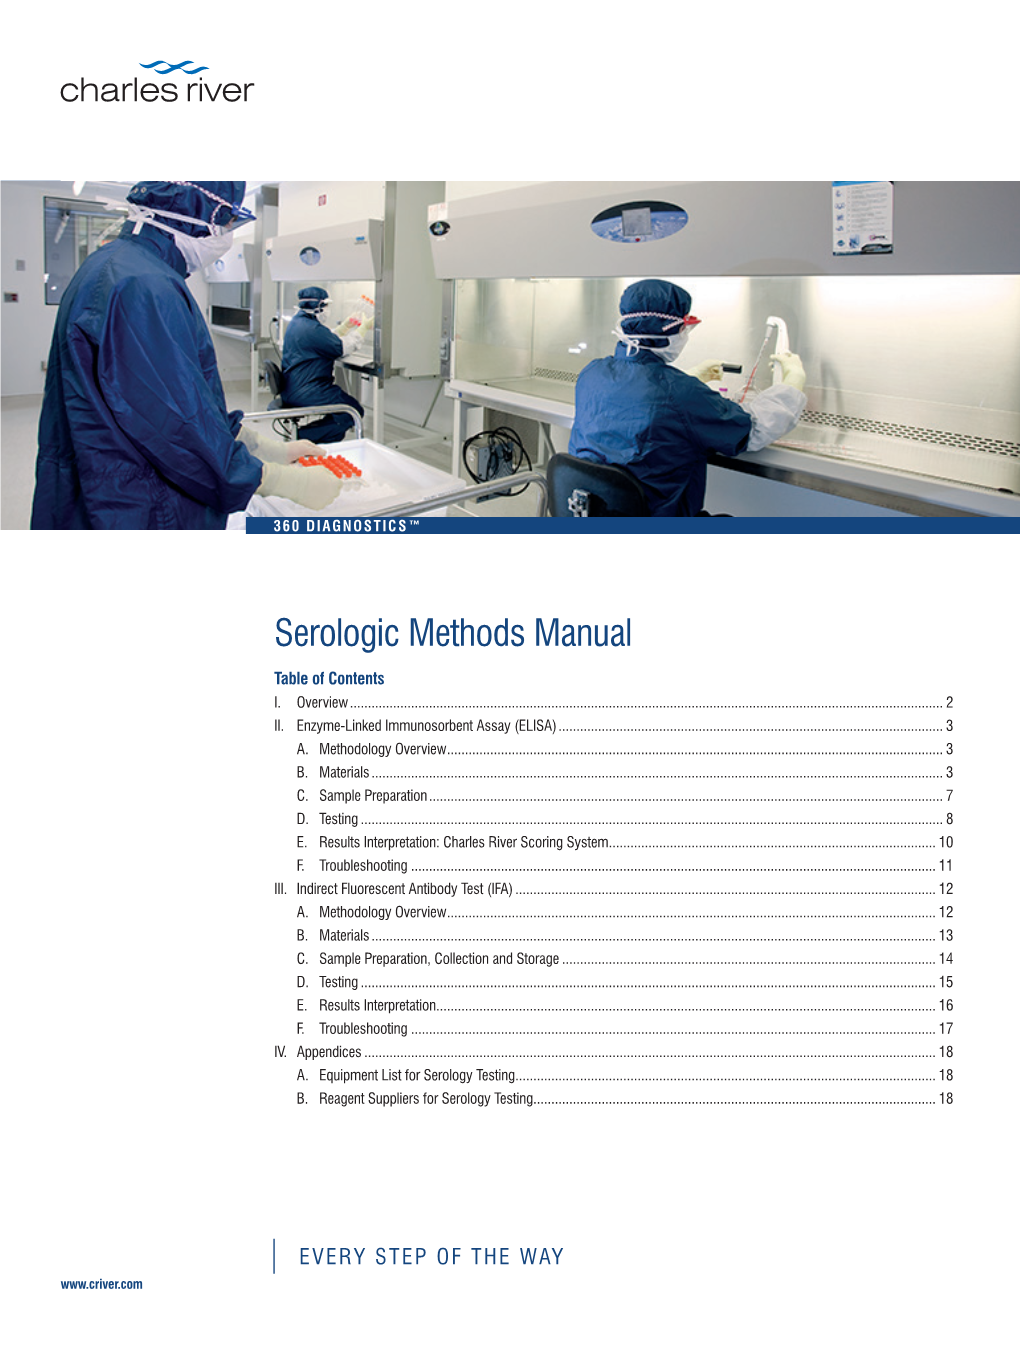 Serology Methods Manual